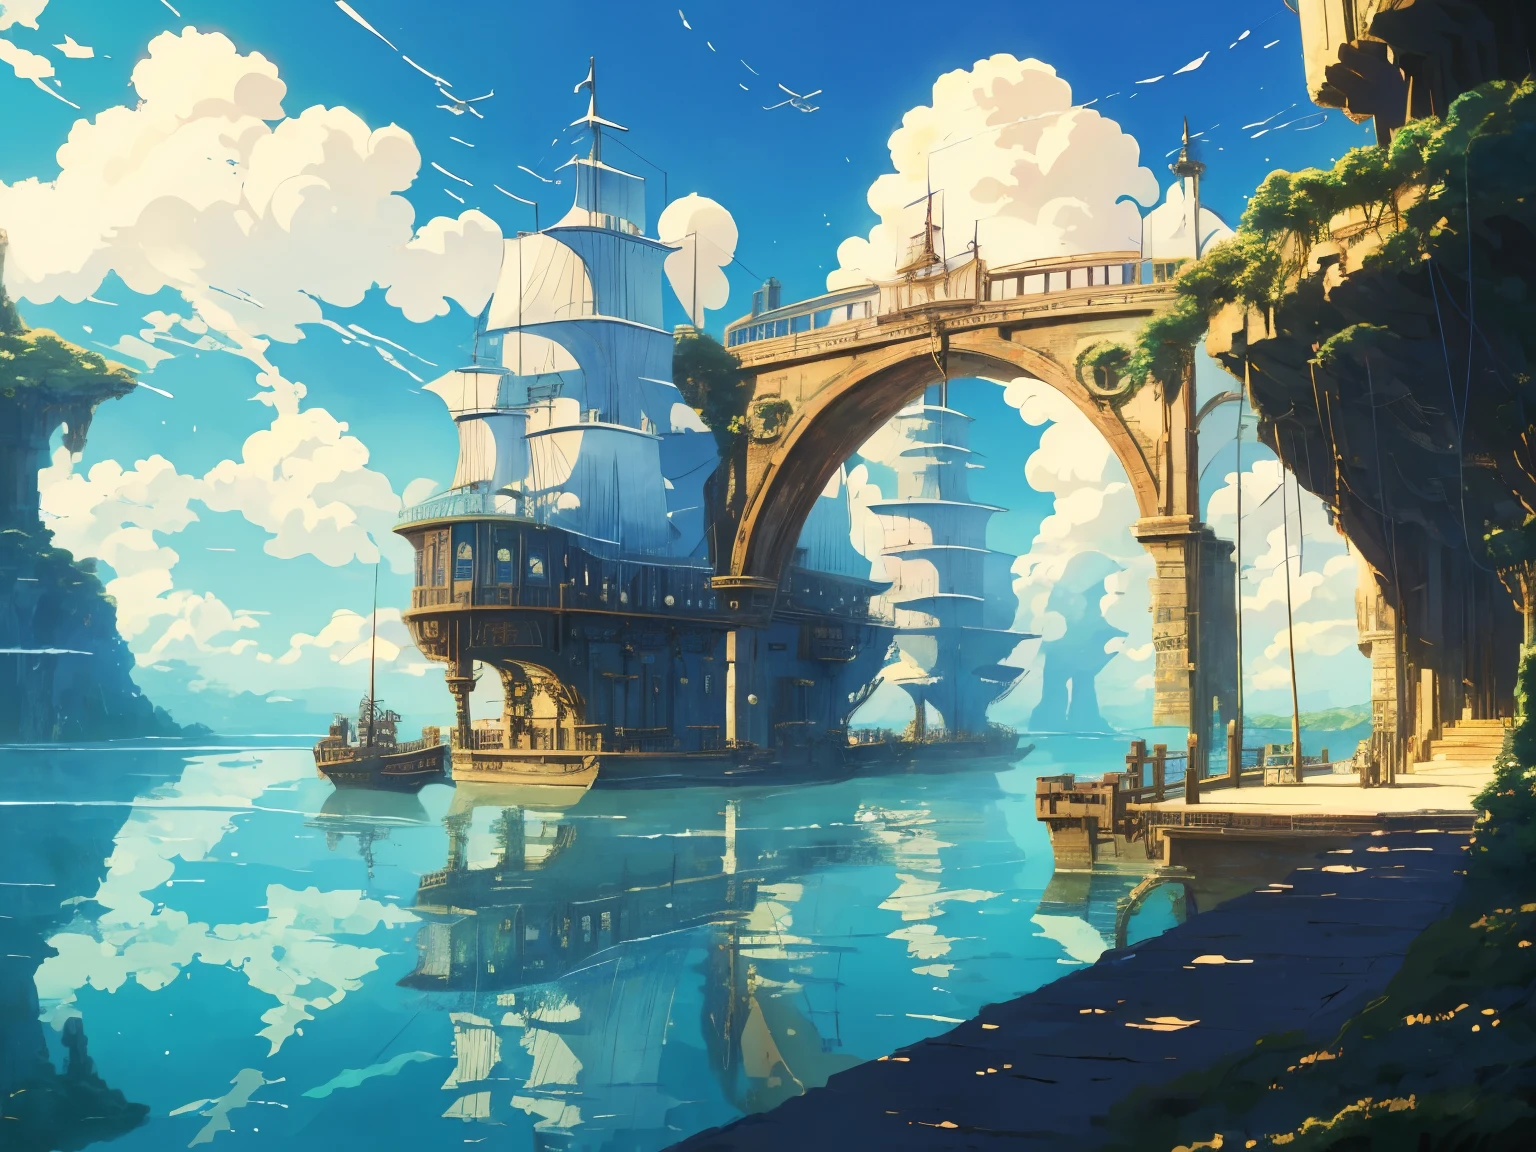 吉卜力工作室电影的 DVD 截图, 美麗的海邊蒸氣龐克橋內飾, 藍天上的雲彩, 宮崎駿設計, 復古動漫